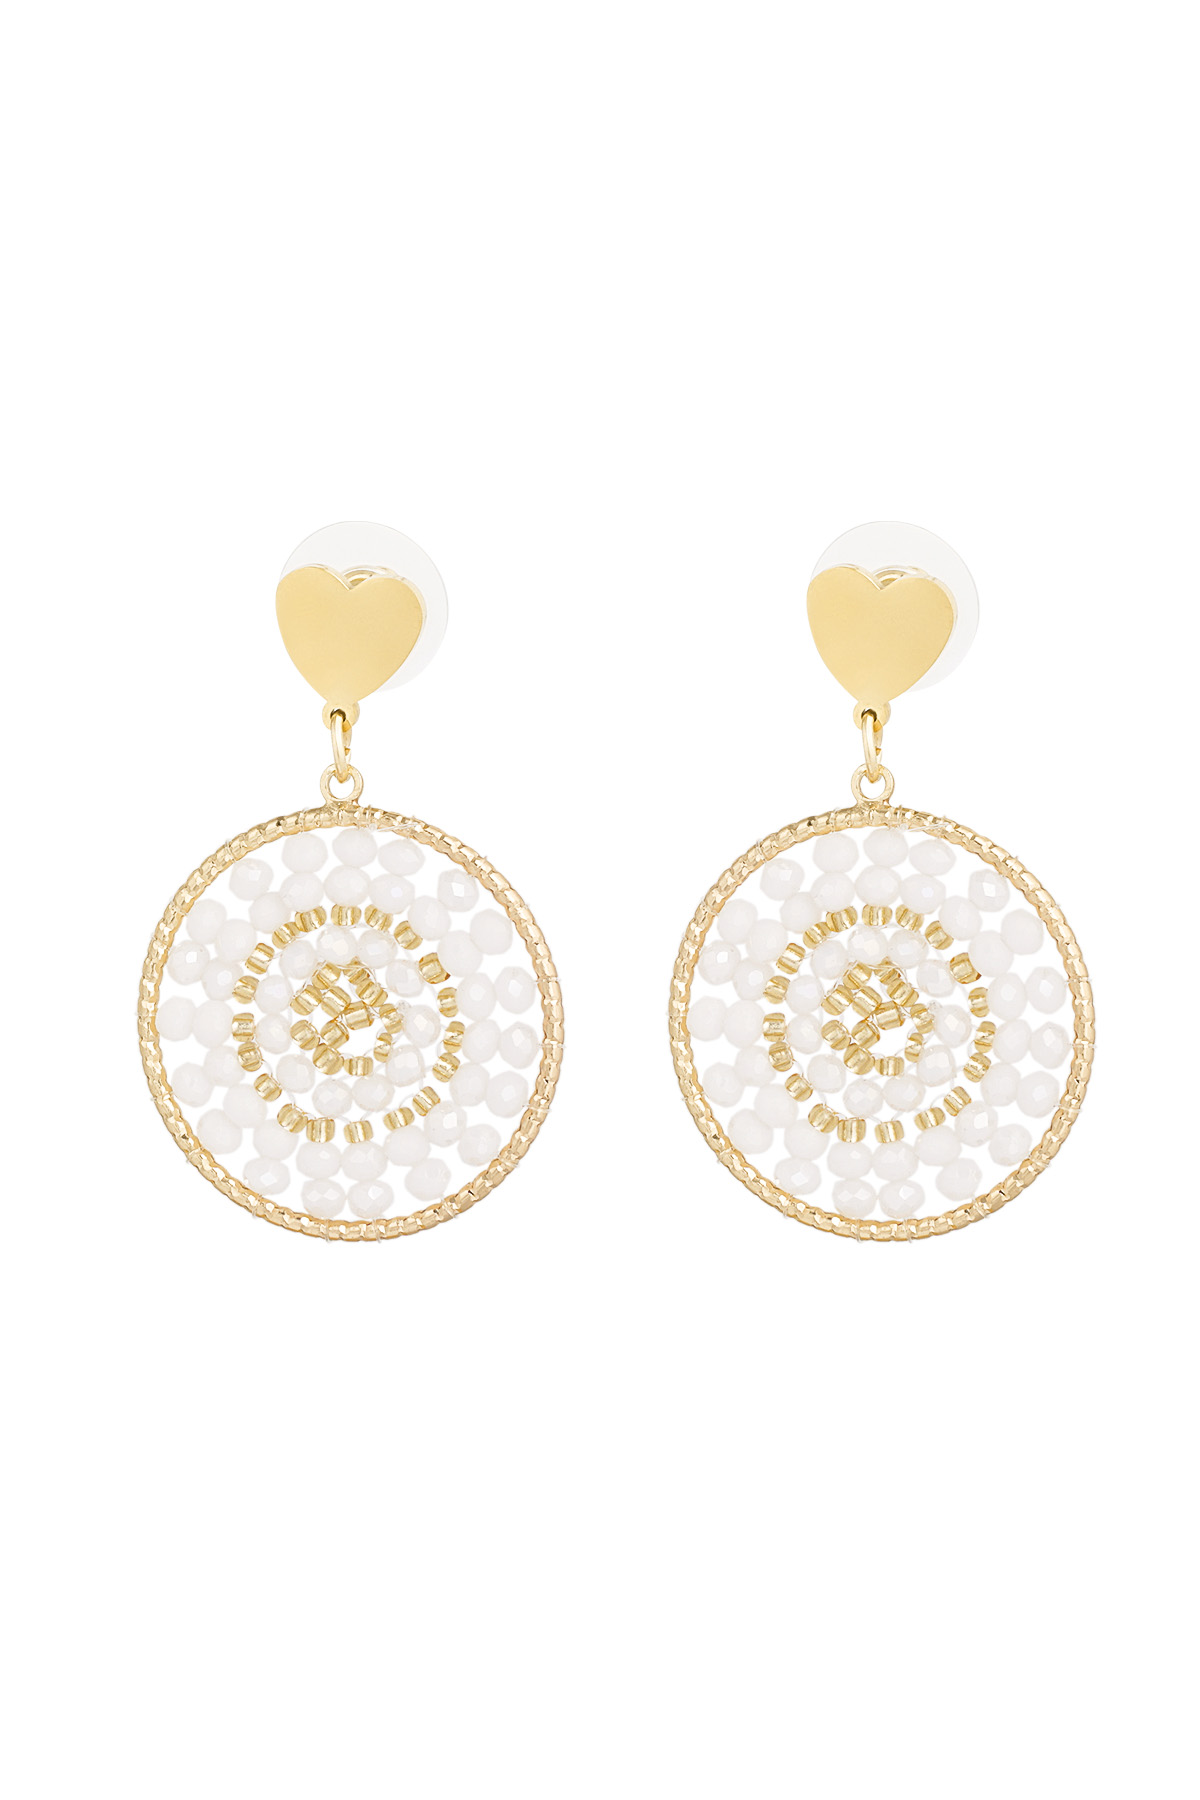 Mandala-Ohrringe mit Herz – Weißgold 